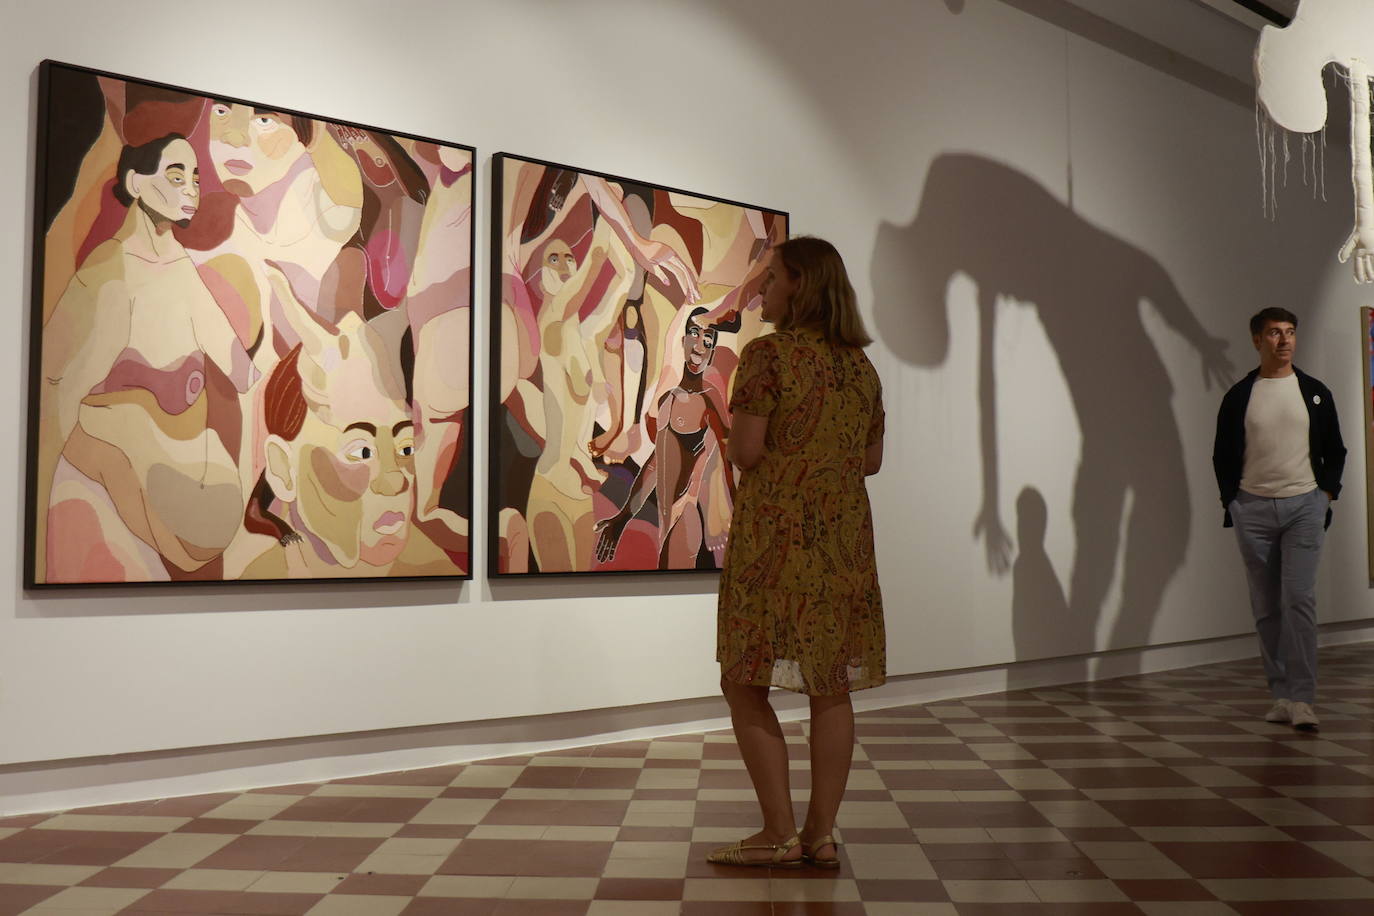 Ela Fidalgo&#039;s exhibition in La Térmica, in pictures